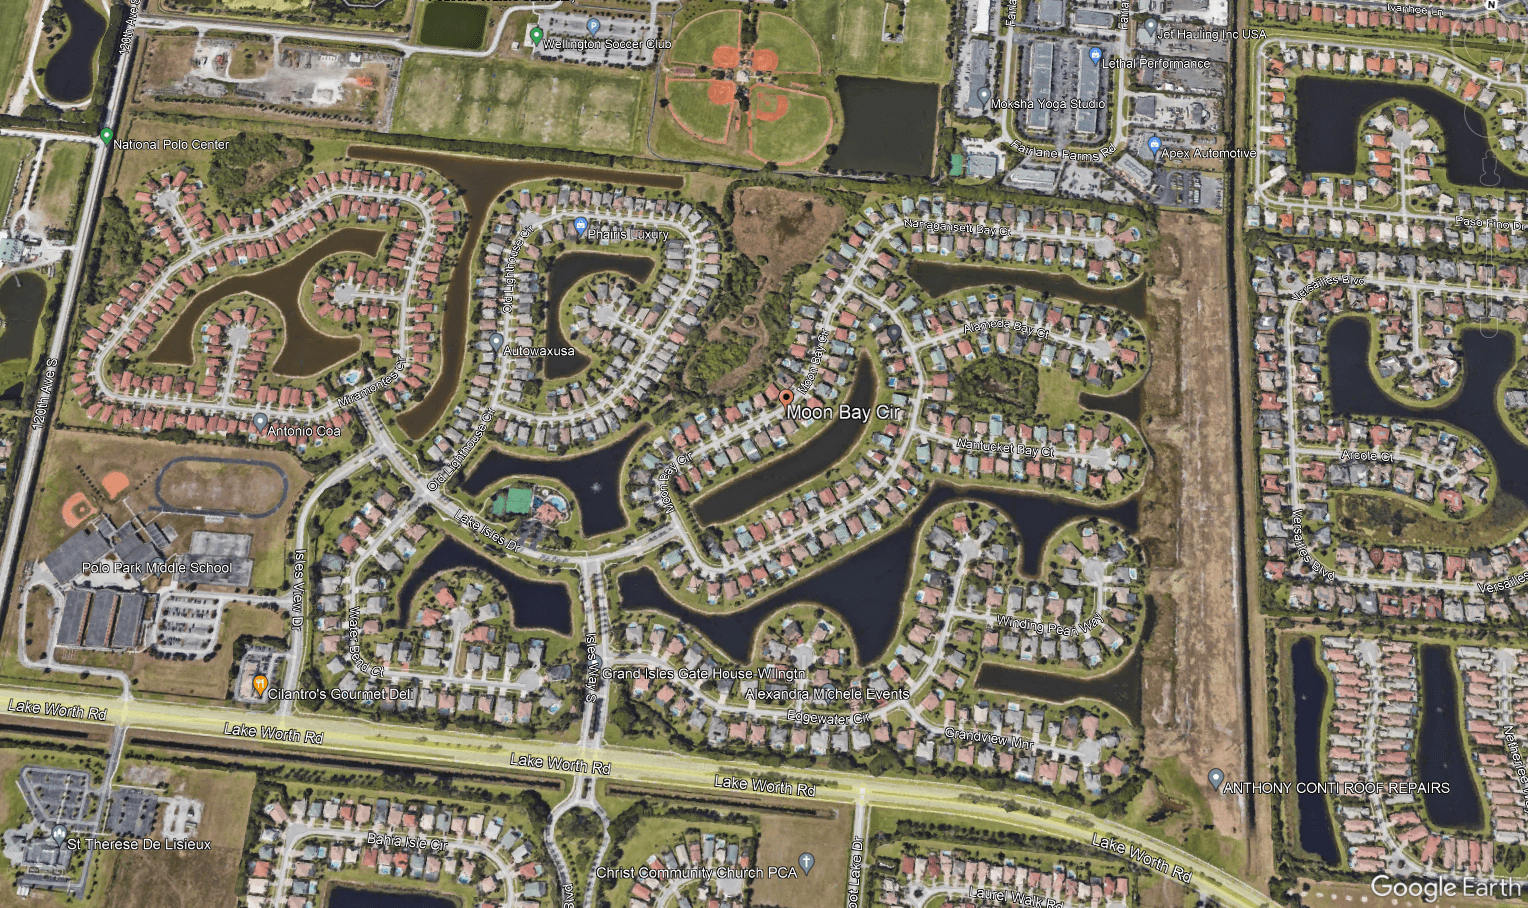 Zrzut ekranu z Google Earth: widok na Moon Bay Circle z lotu ptaka. Na obrazie widać wiele stawów i kręte ulice, przy których zbudowano osiedla.